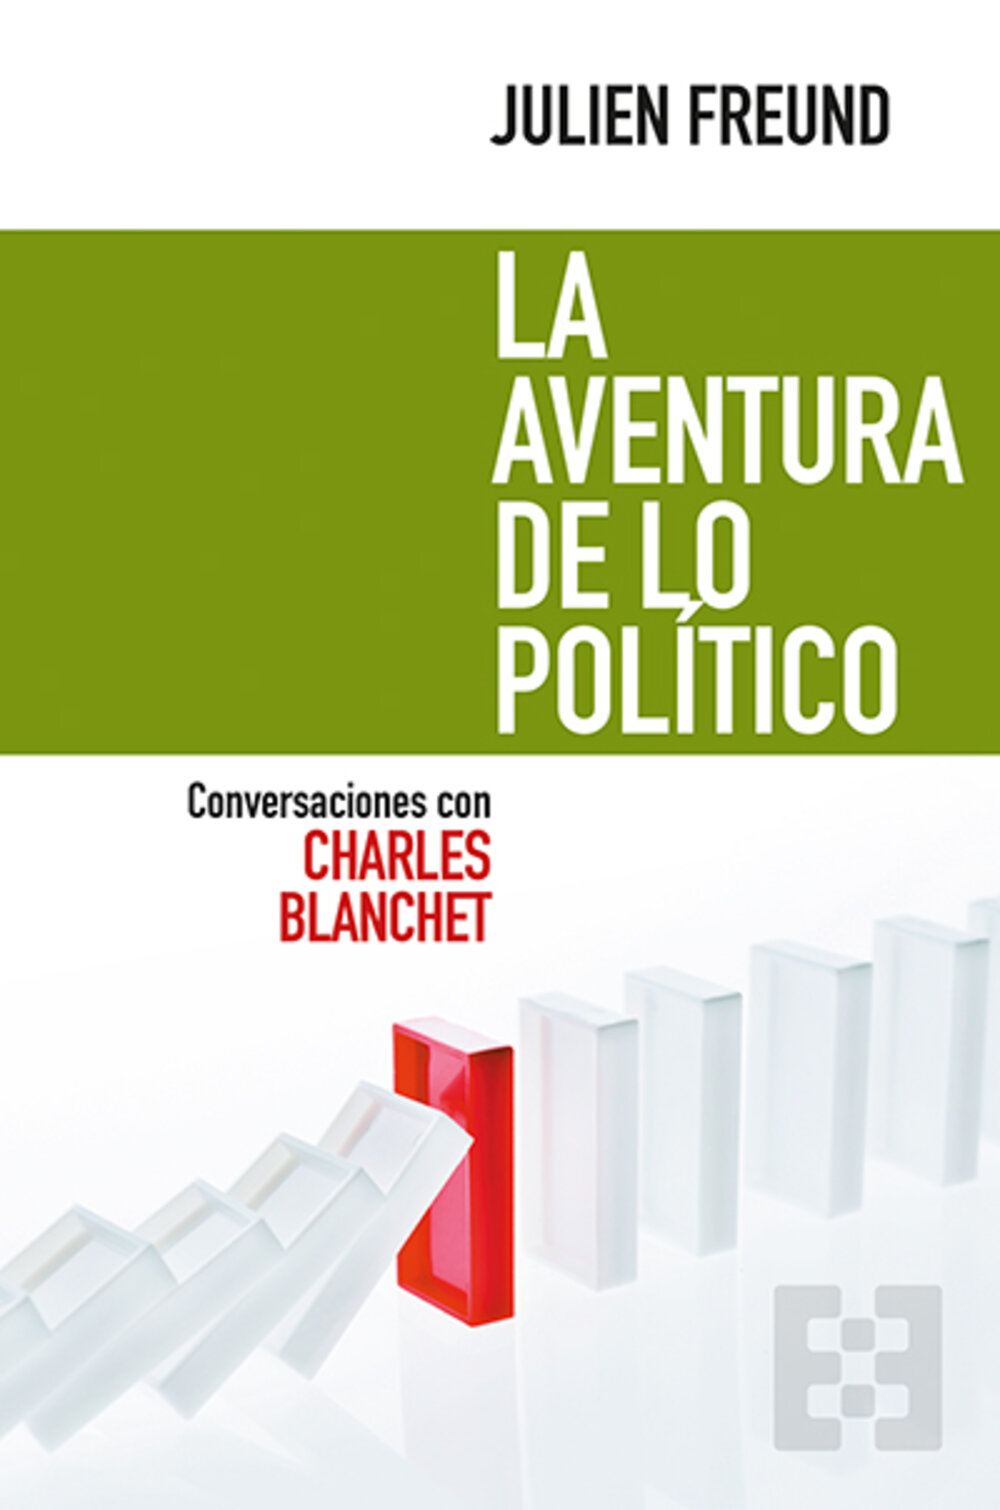 La aventura de lo político. Conversaciones con Charles BlanchetFreund, Julien